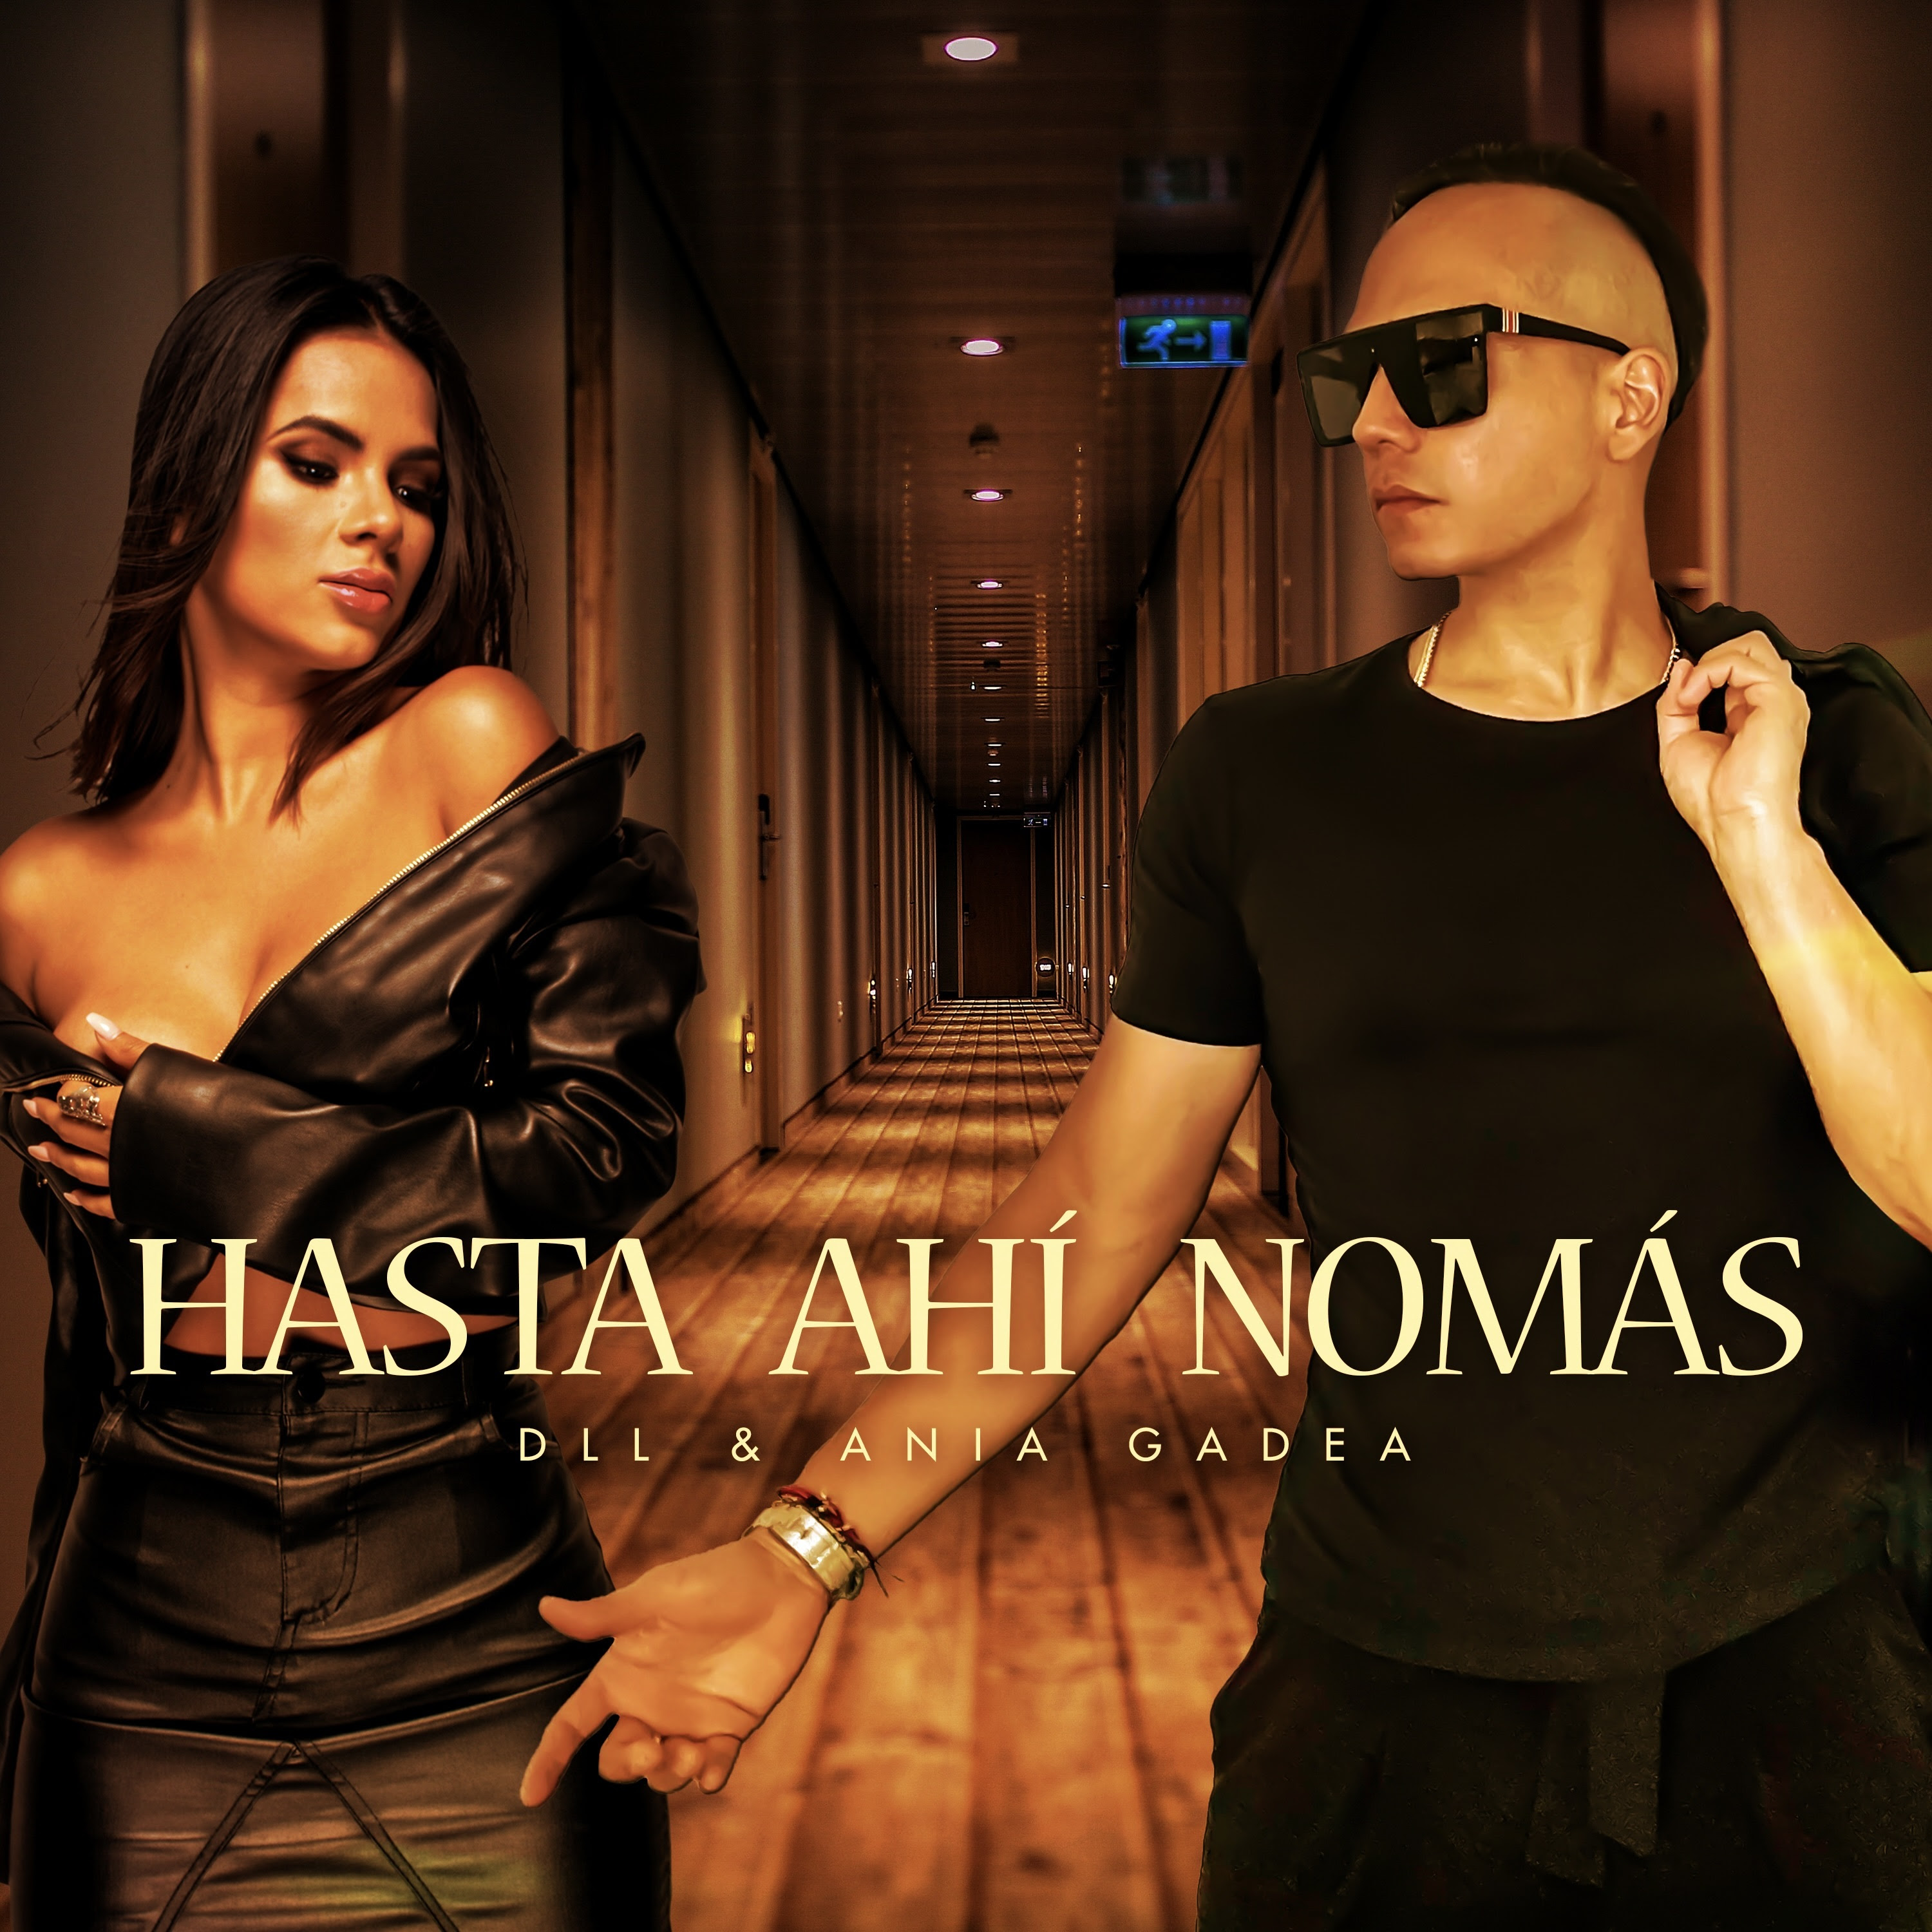  DLL y Ania Gadea, nos presentan su más reciente lanzamiento musical titulado “Hasta Ahí Nomás” .